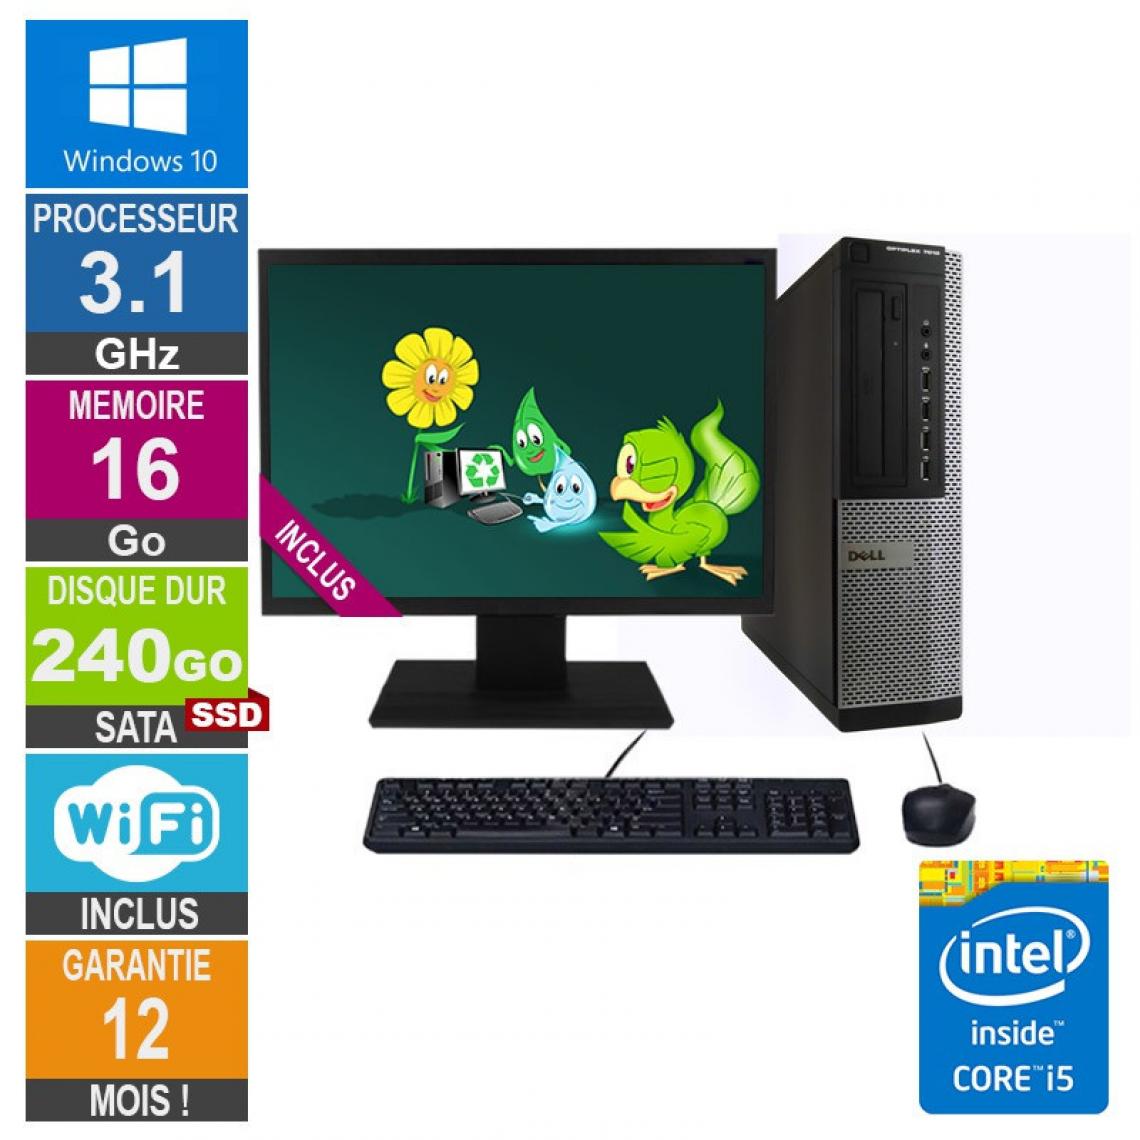 Dell - PC Dell Optiplex 7010 DT Core i5-2400 3.10GHz 16Go/240Go SSD Wifi W10 + Ecran 19 - PC Fixe